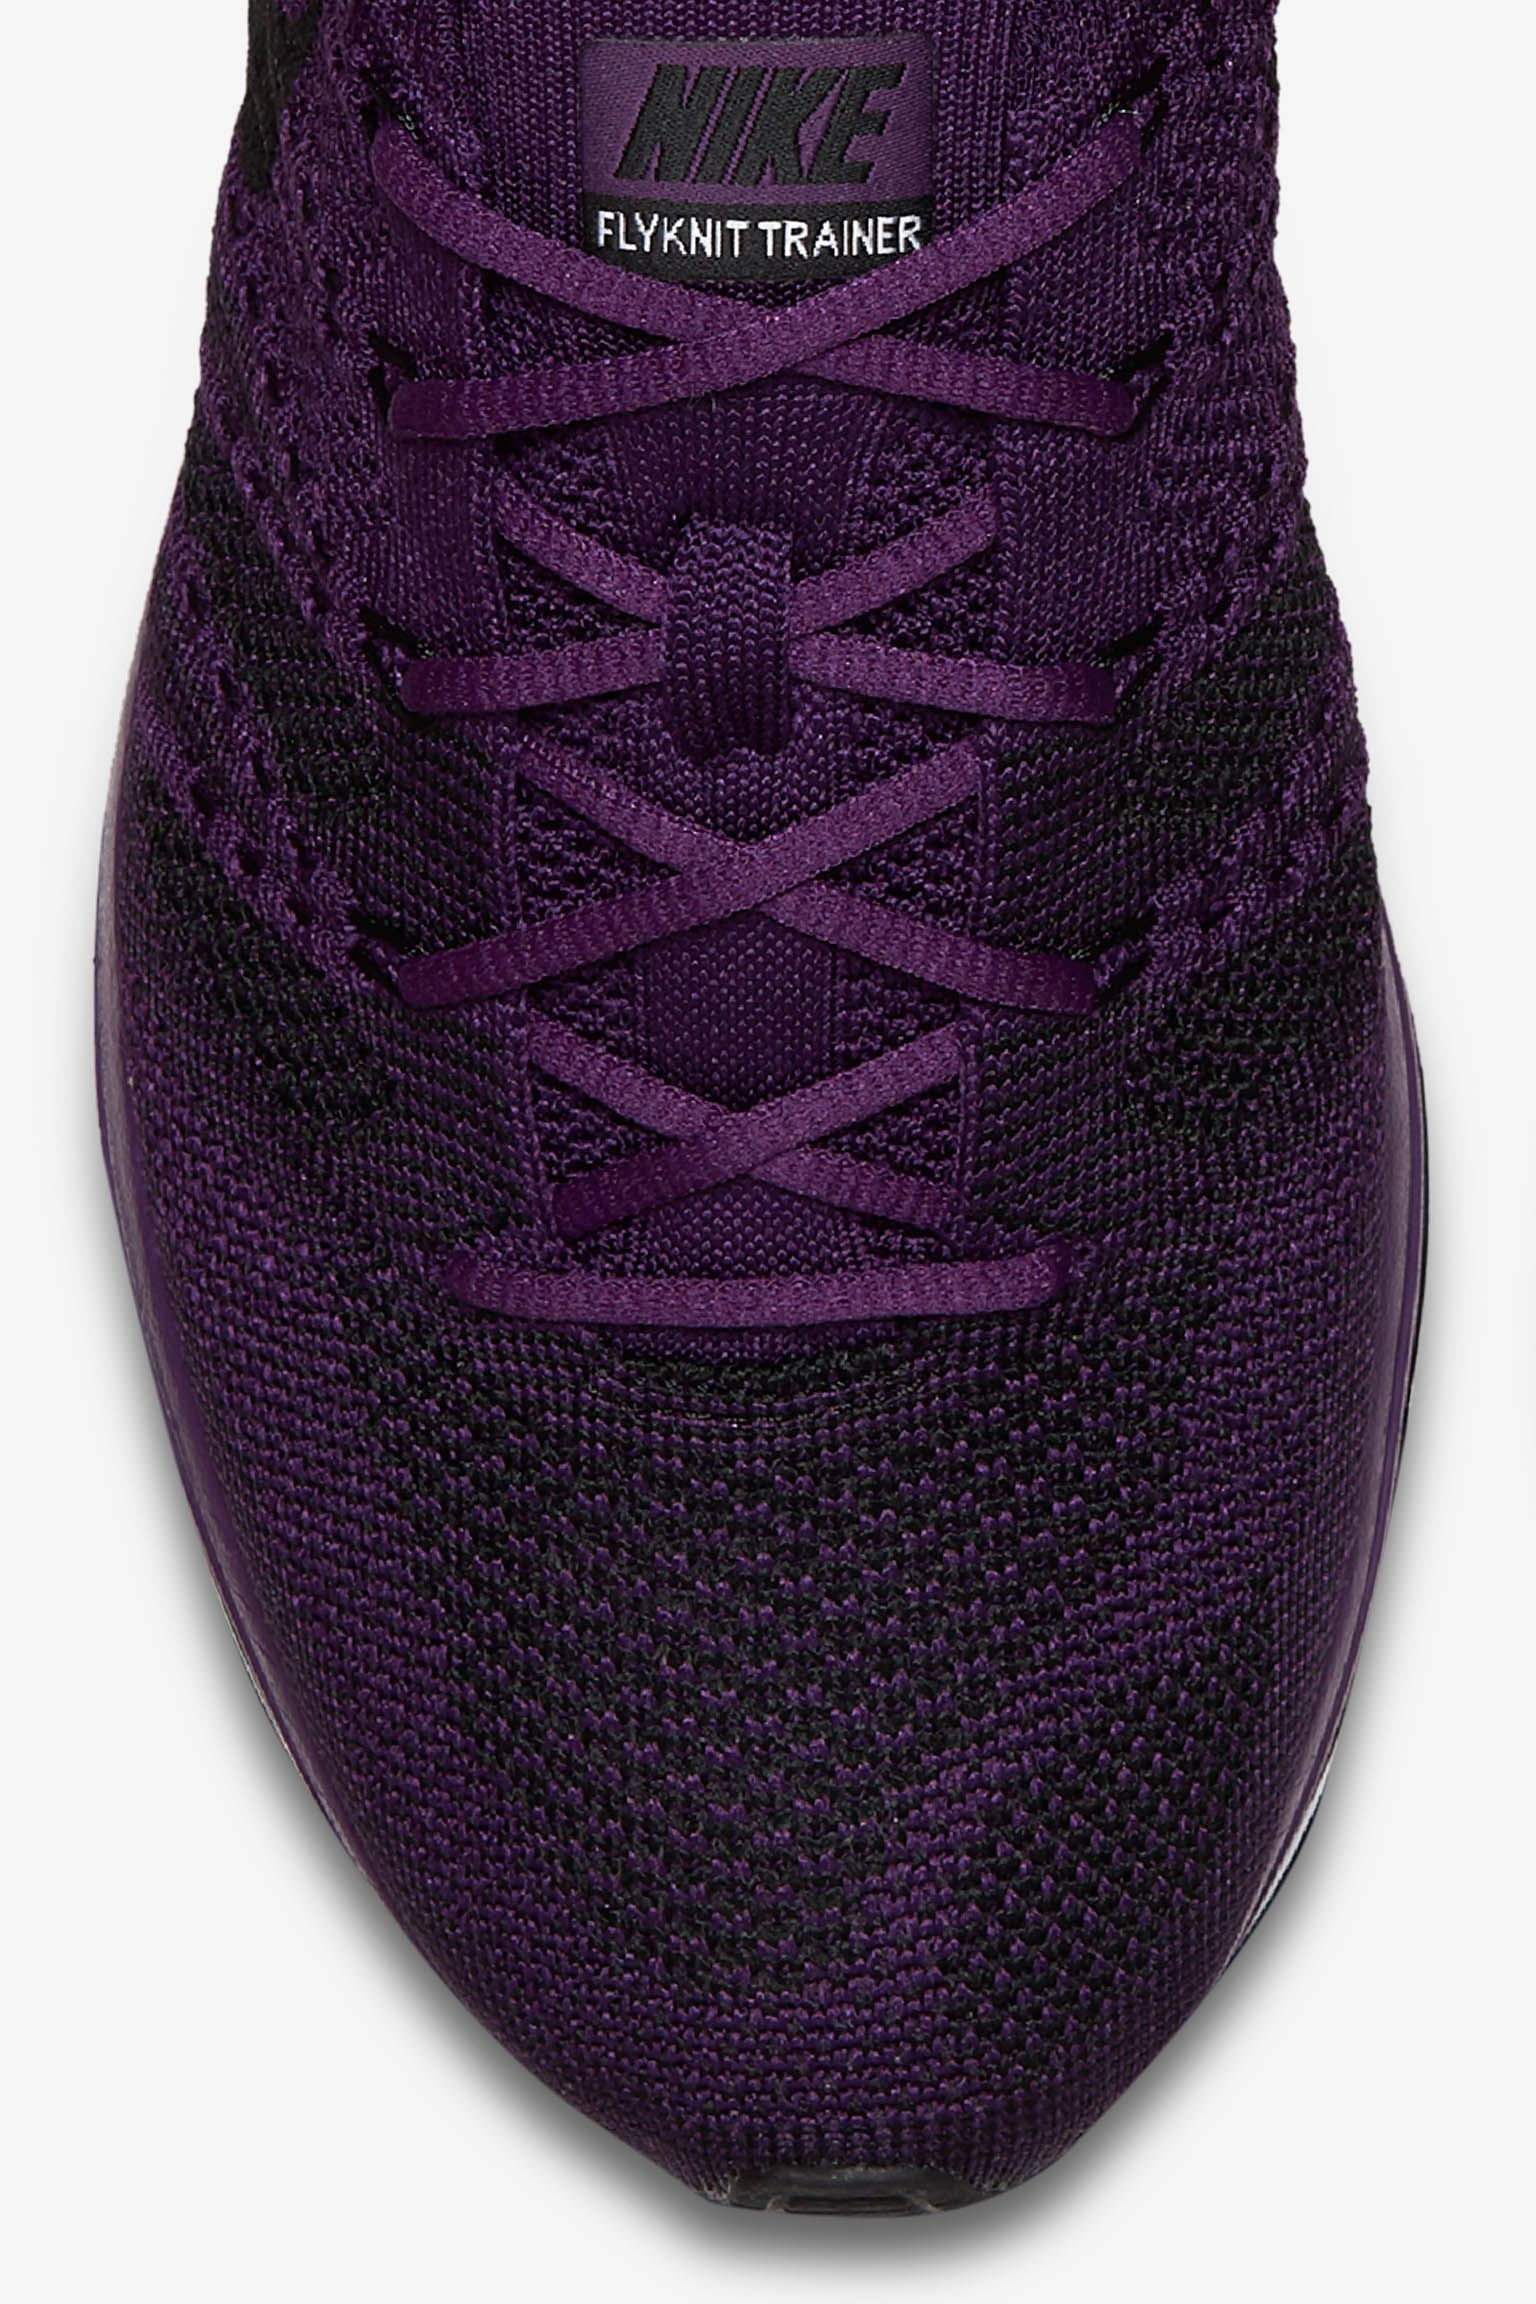 Nike Flyknit Trainer 'Night Purple 